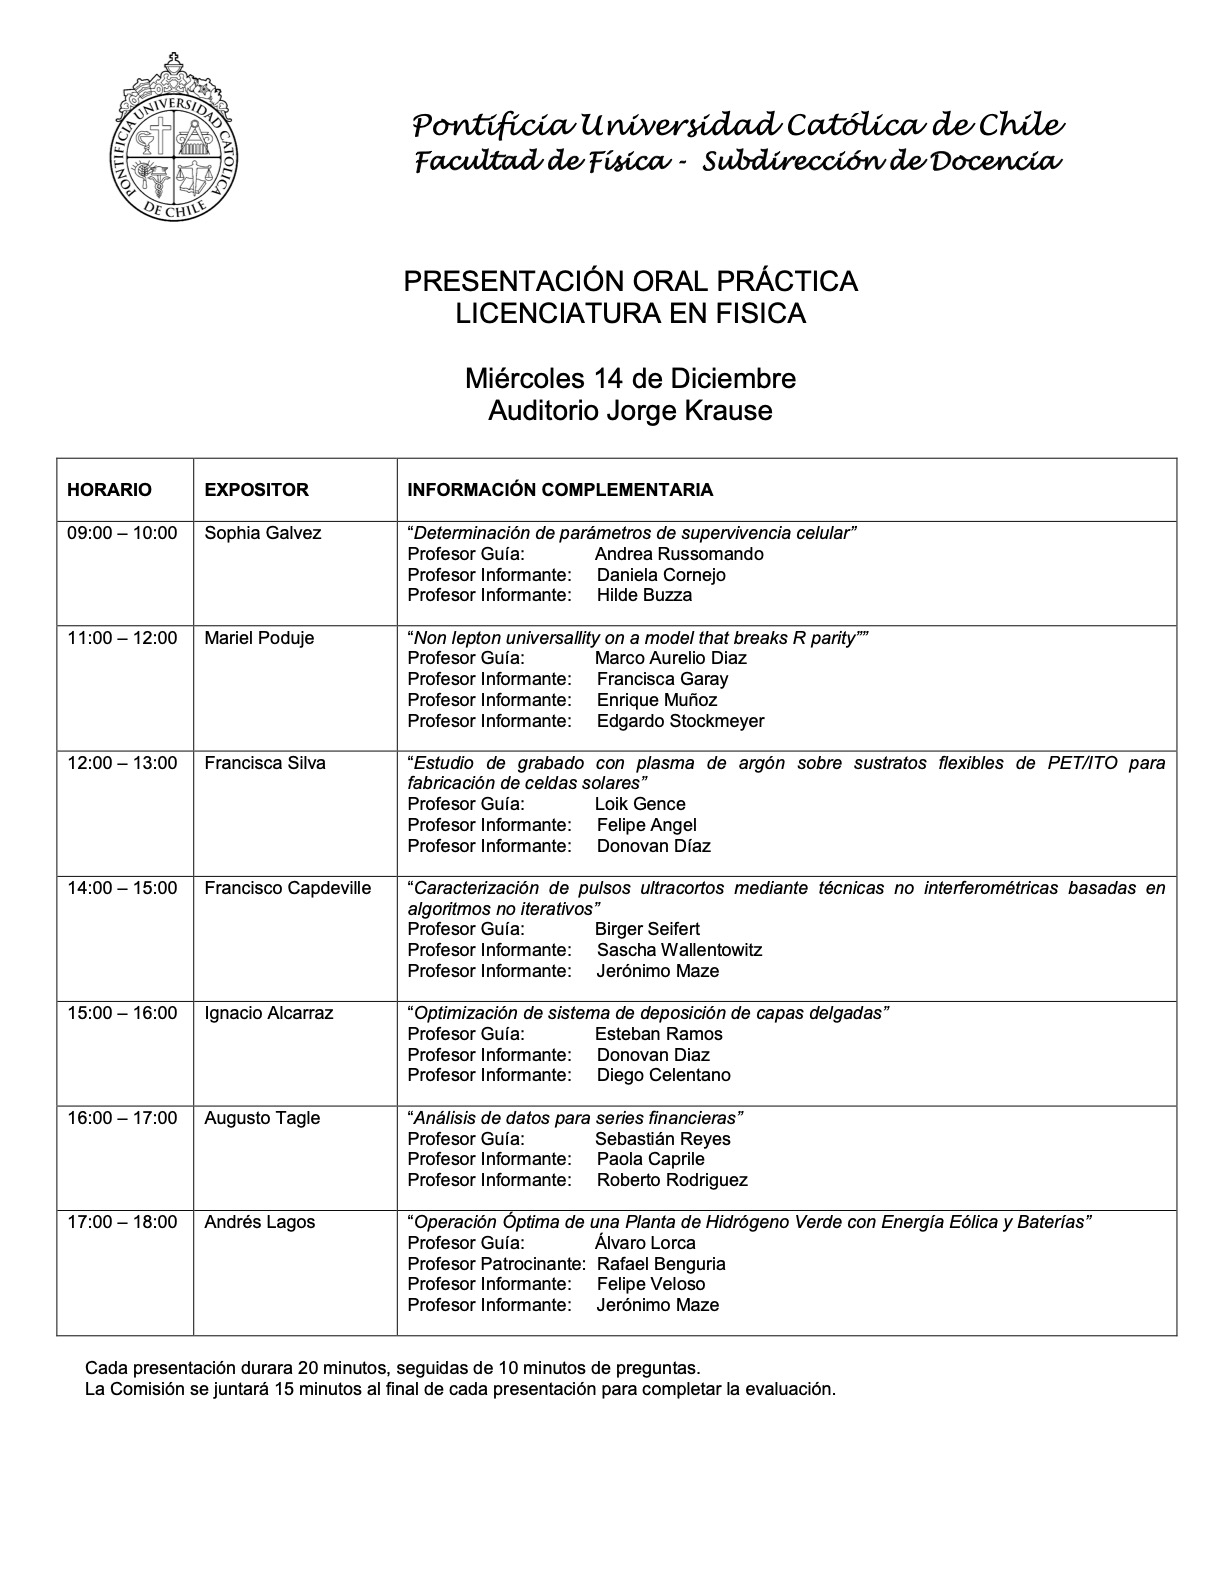 Calendario Practicas de Licenciatura IF 22022 14.12.2022 publicar